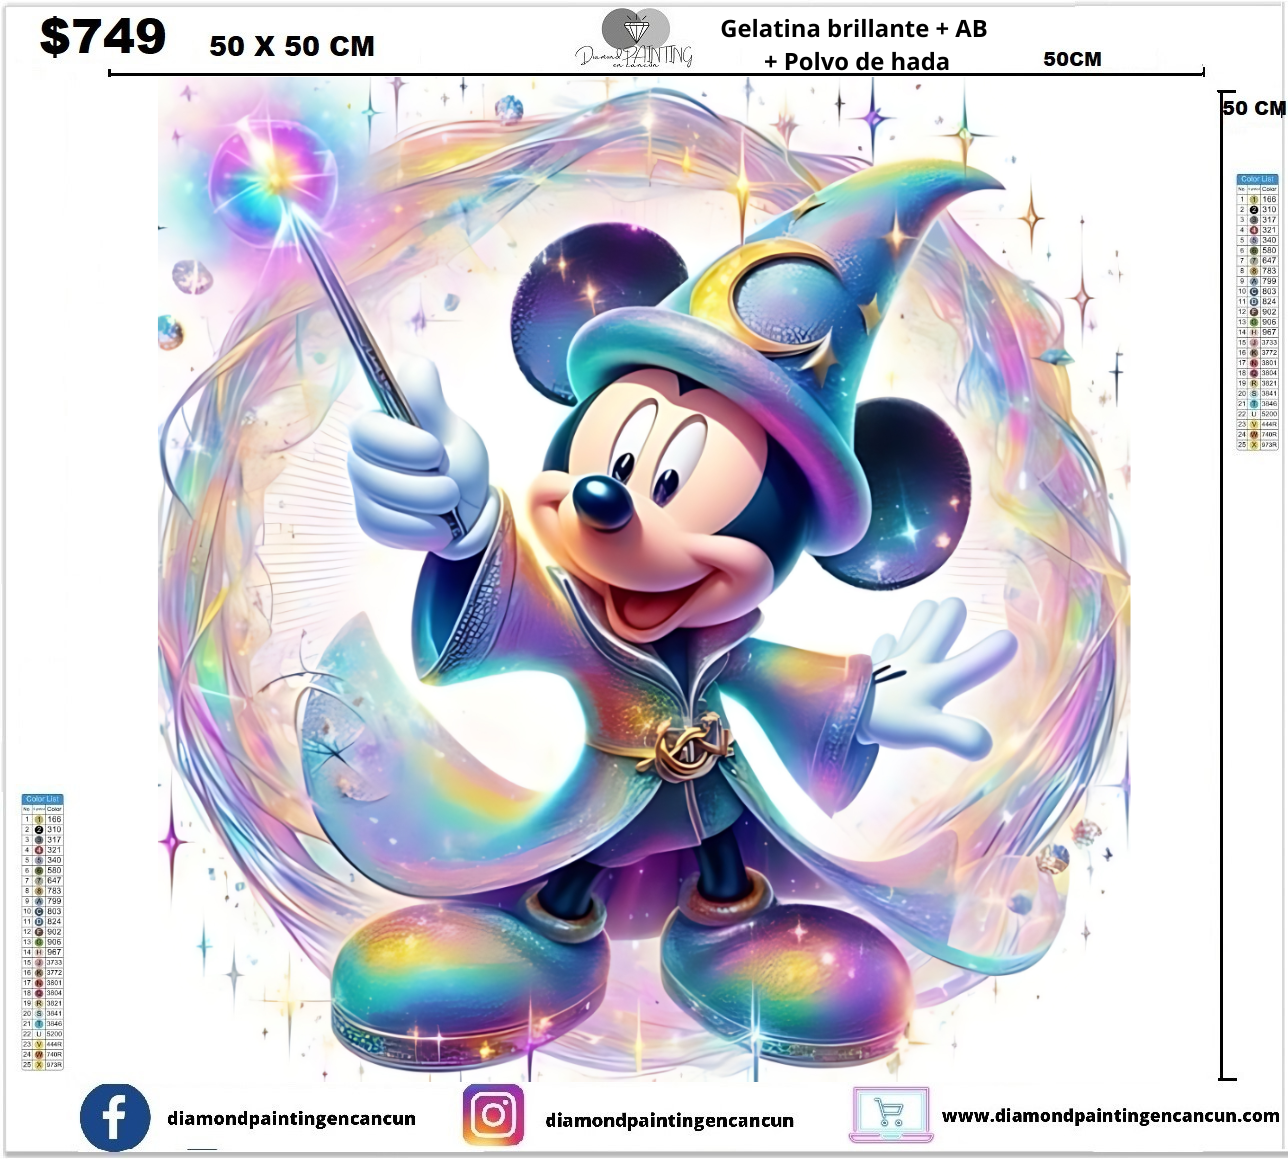 Mickey 50 x 50 contiene DIAMANTE GELATINA BRILLANTE OSCURIDAD, AB Y POLVO DE HADA